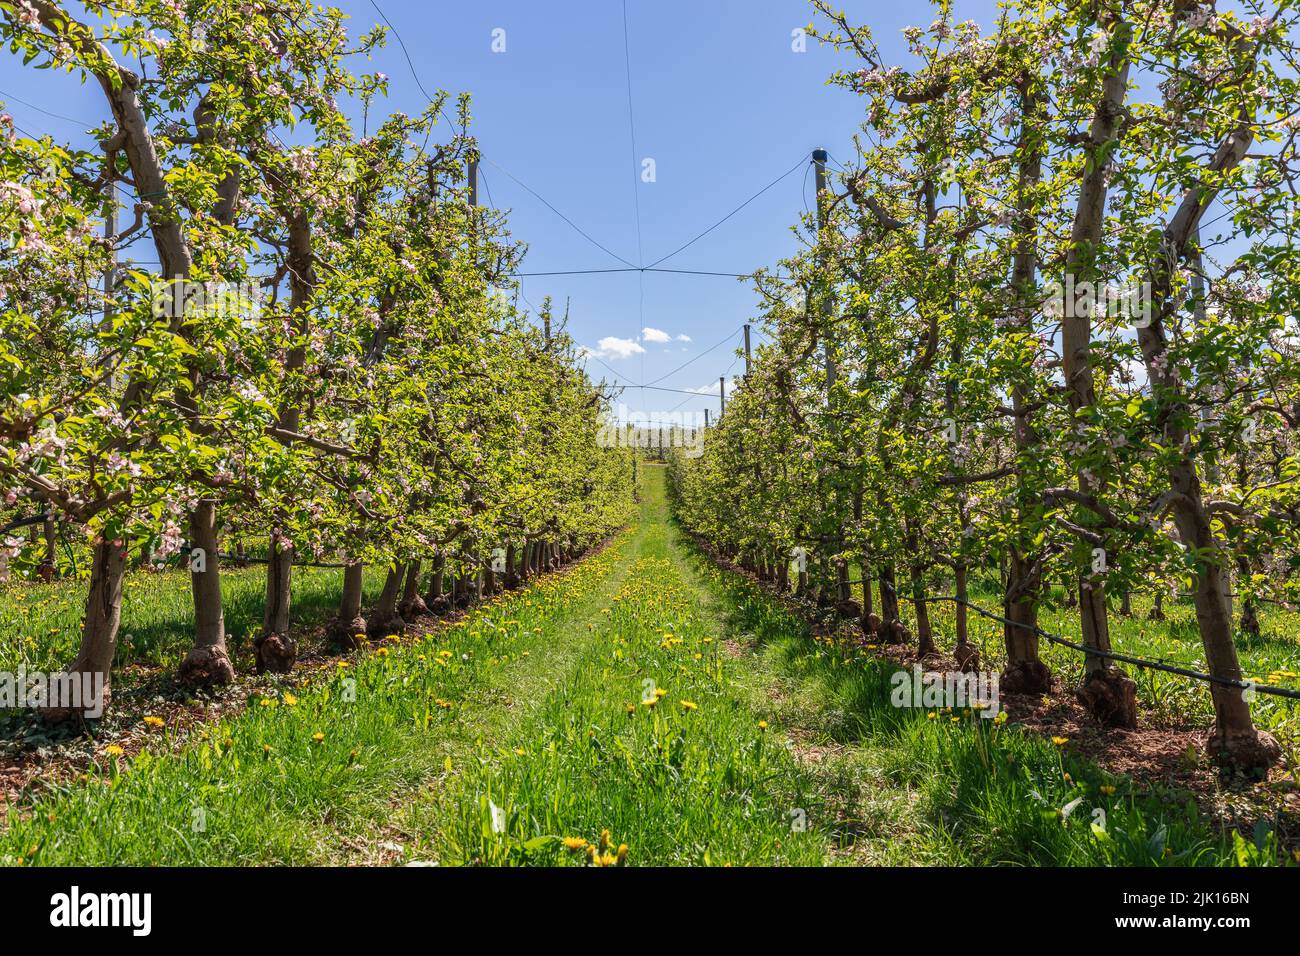 Bel vicolo lungo di file parallele di alberi di mela fioriti con erba smeraldo e dandelioni in primavera, Val di non, Trentino, Italia Foto Stock